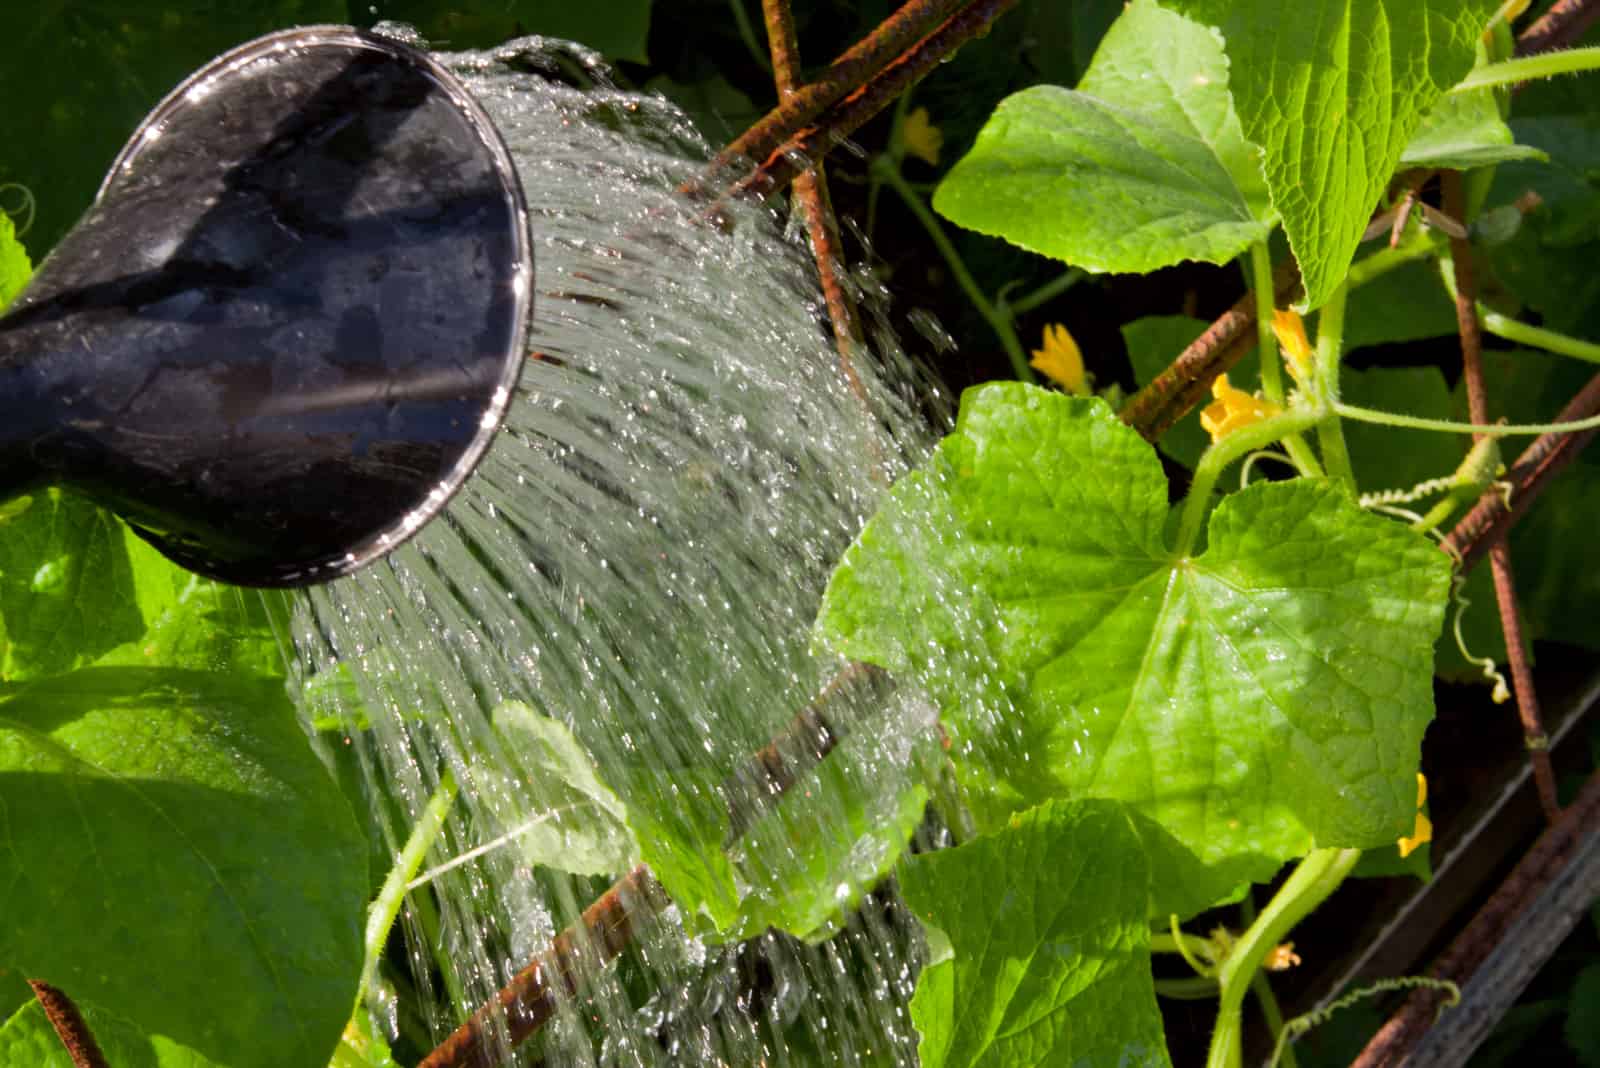 watering cucumber plant in garden